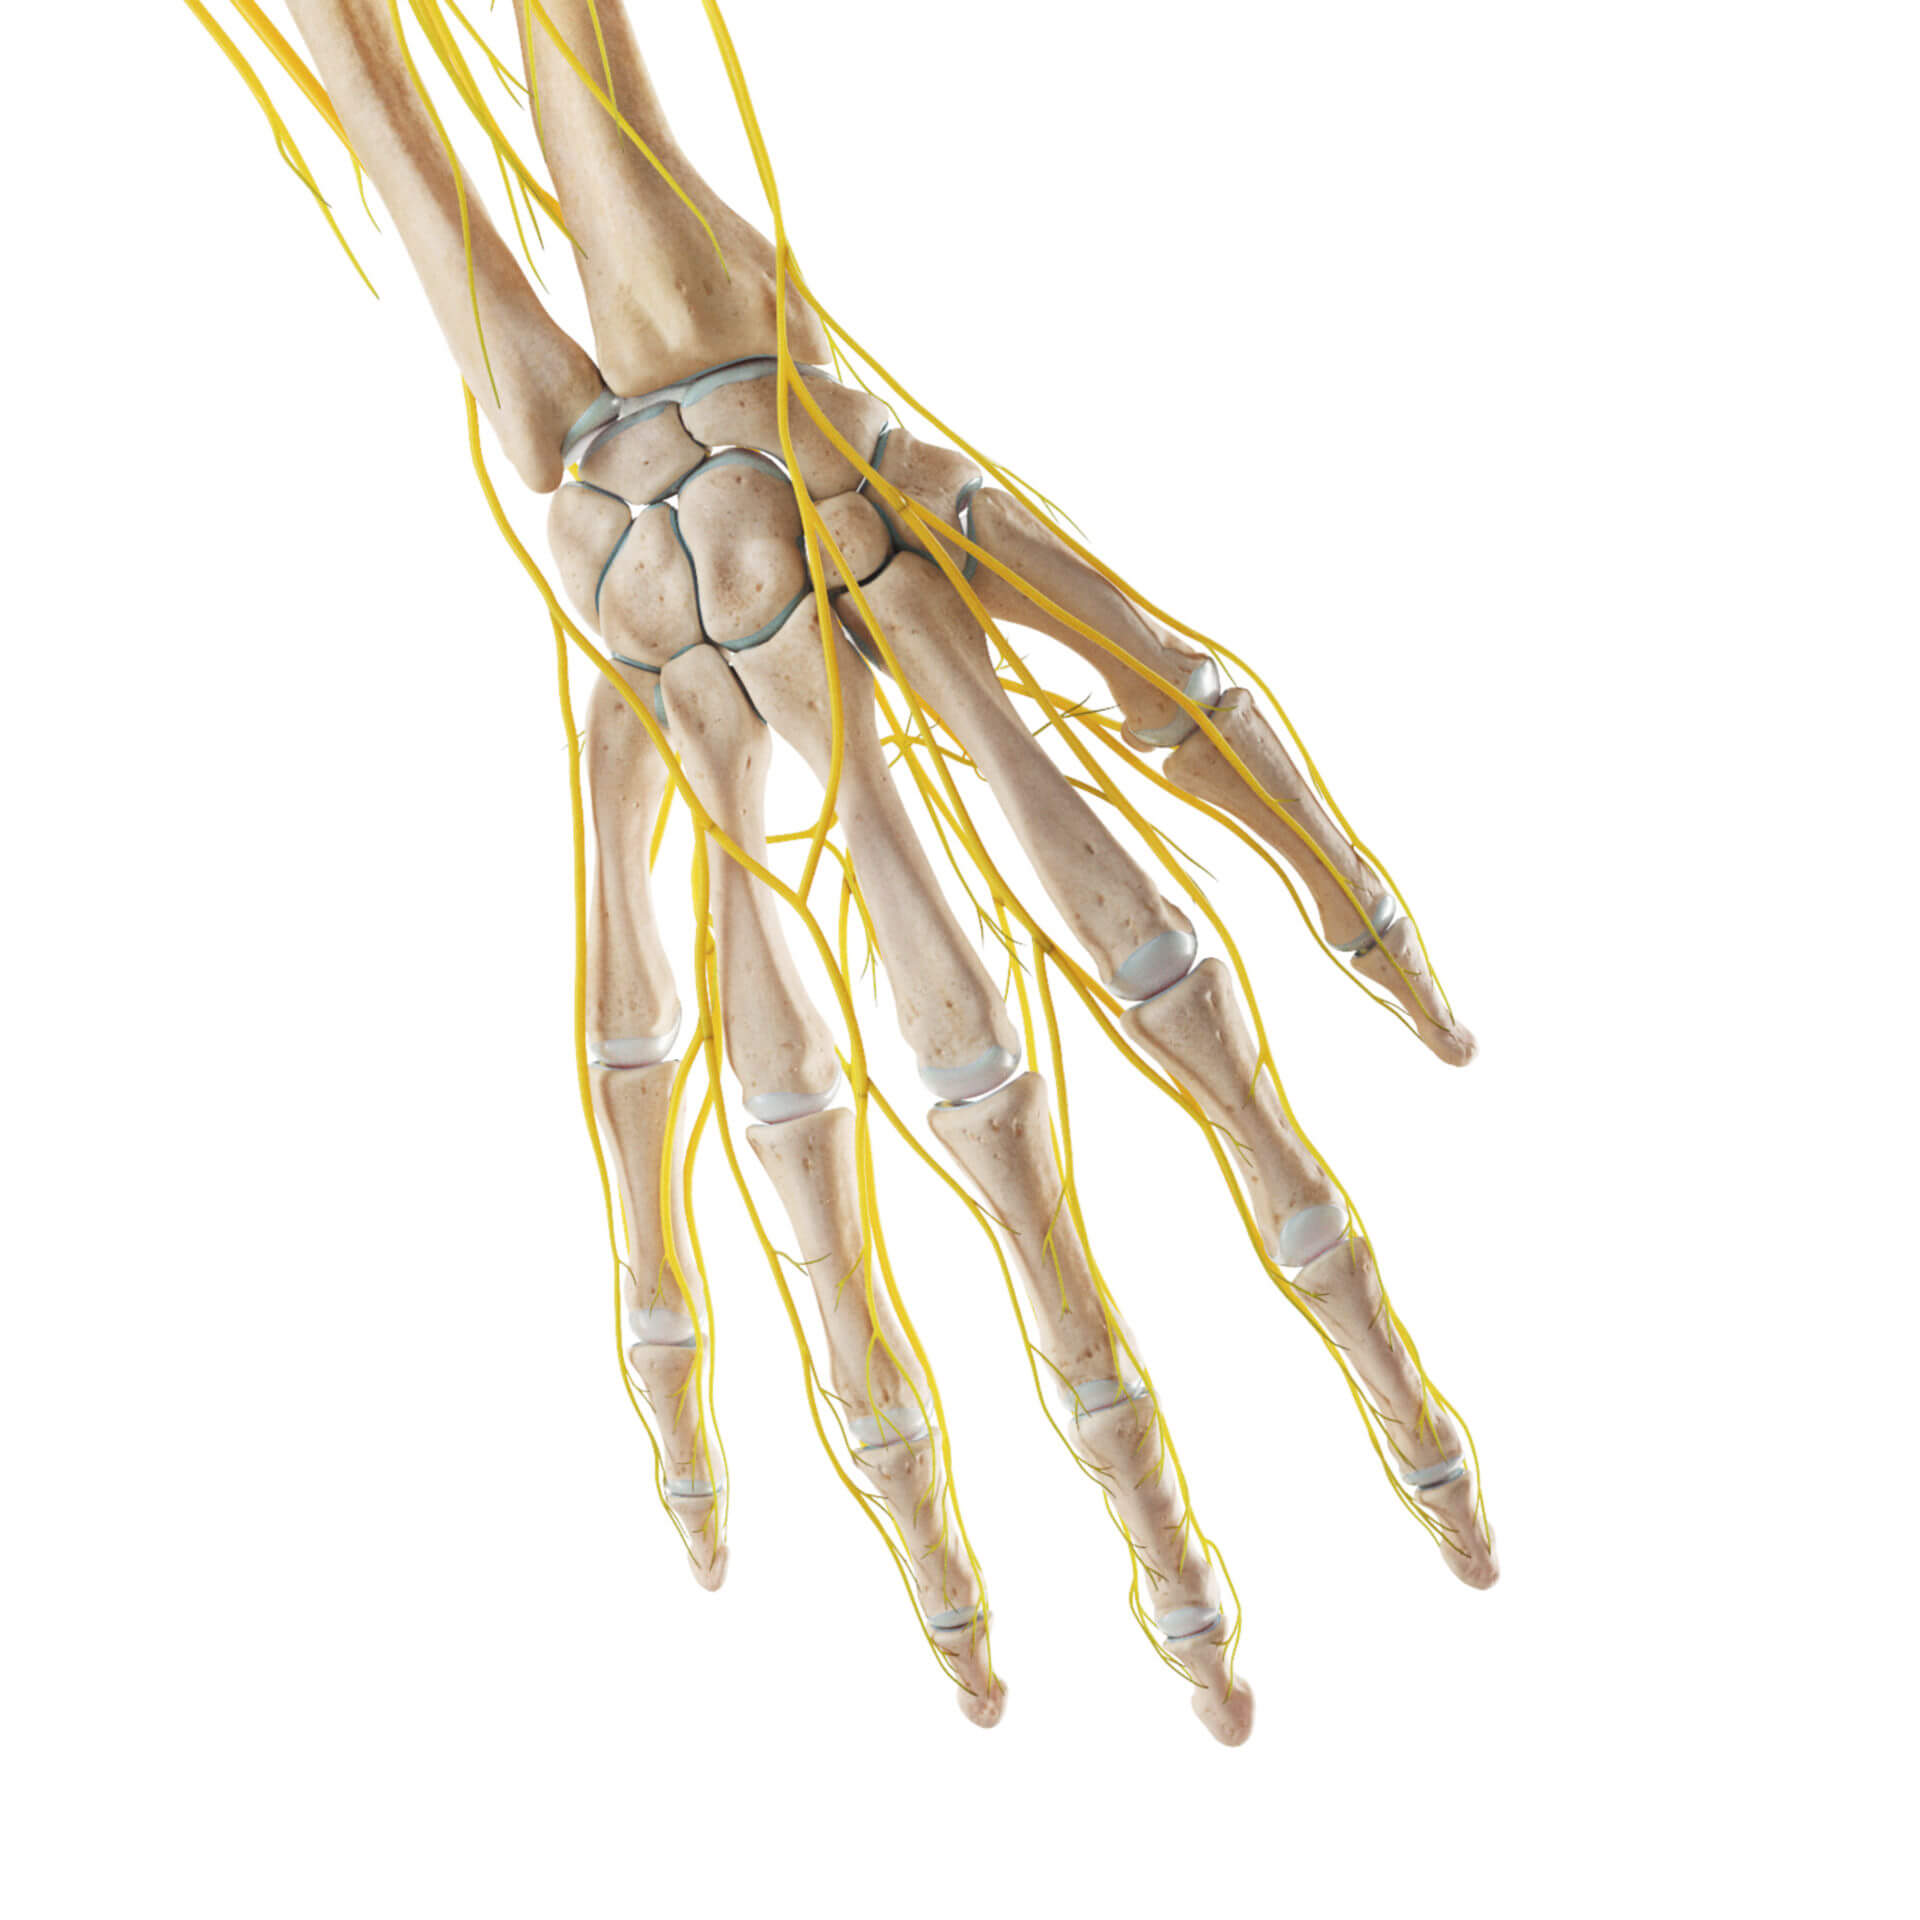 Skelett und Nerven der Hand (dorsal)